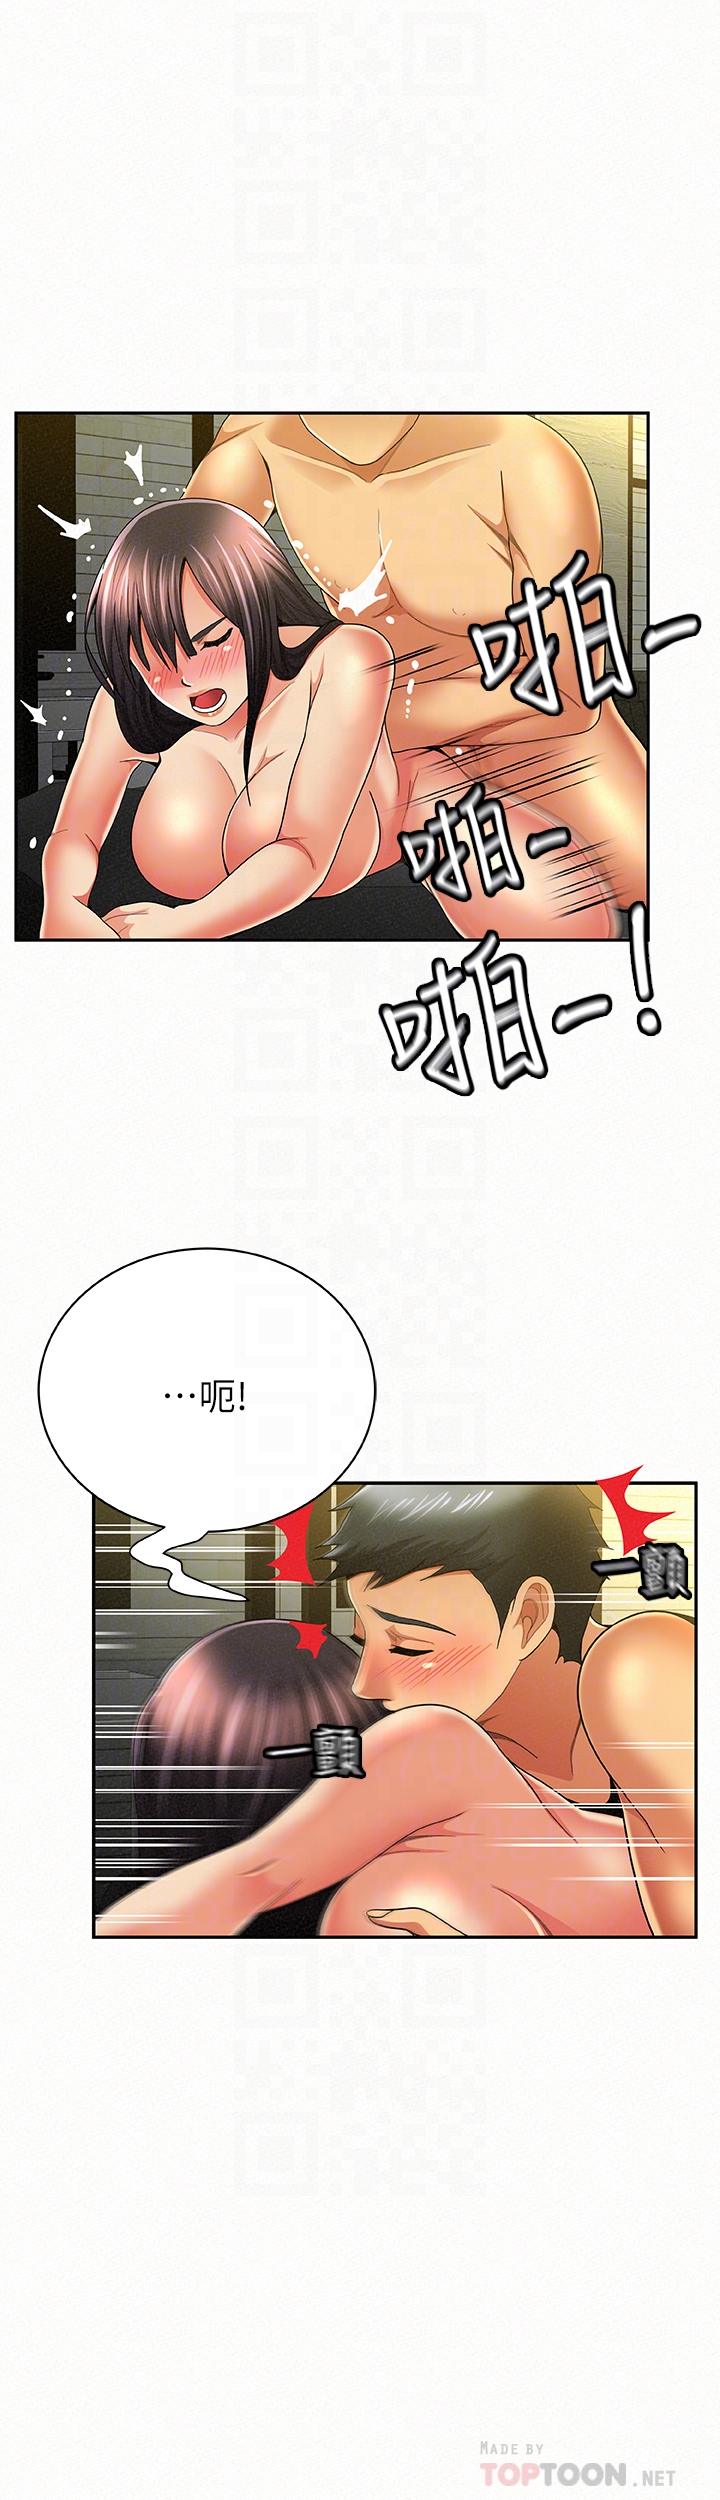 韩国污漫画 報告夫人 第39话-夫人房间传出的呻吟声 7